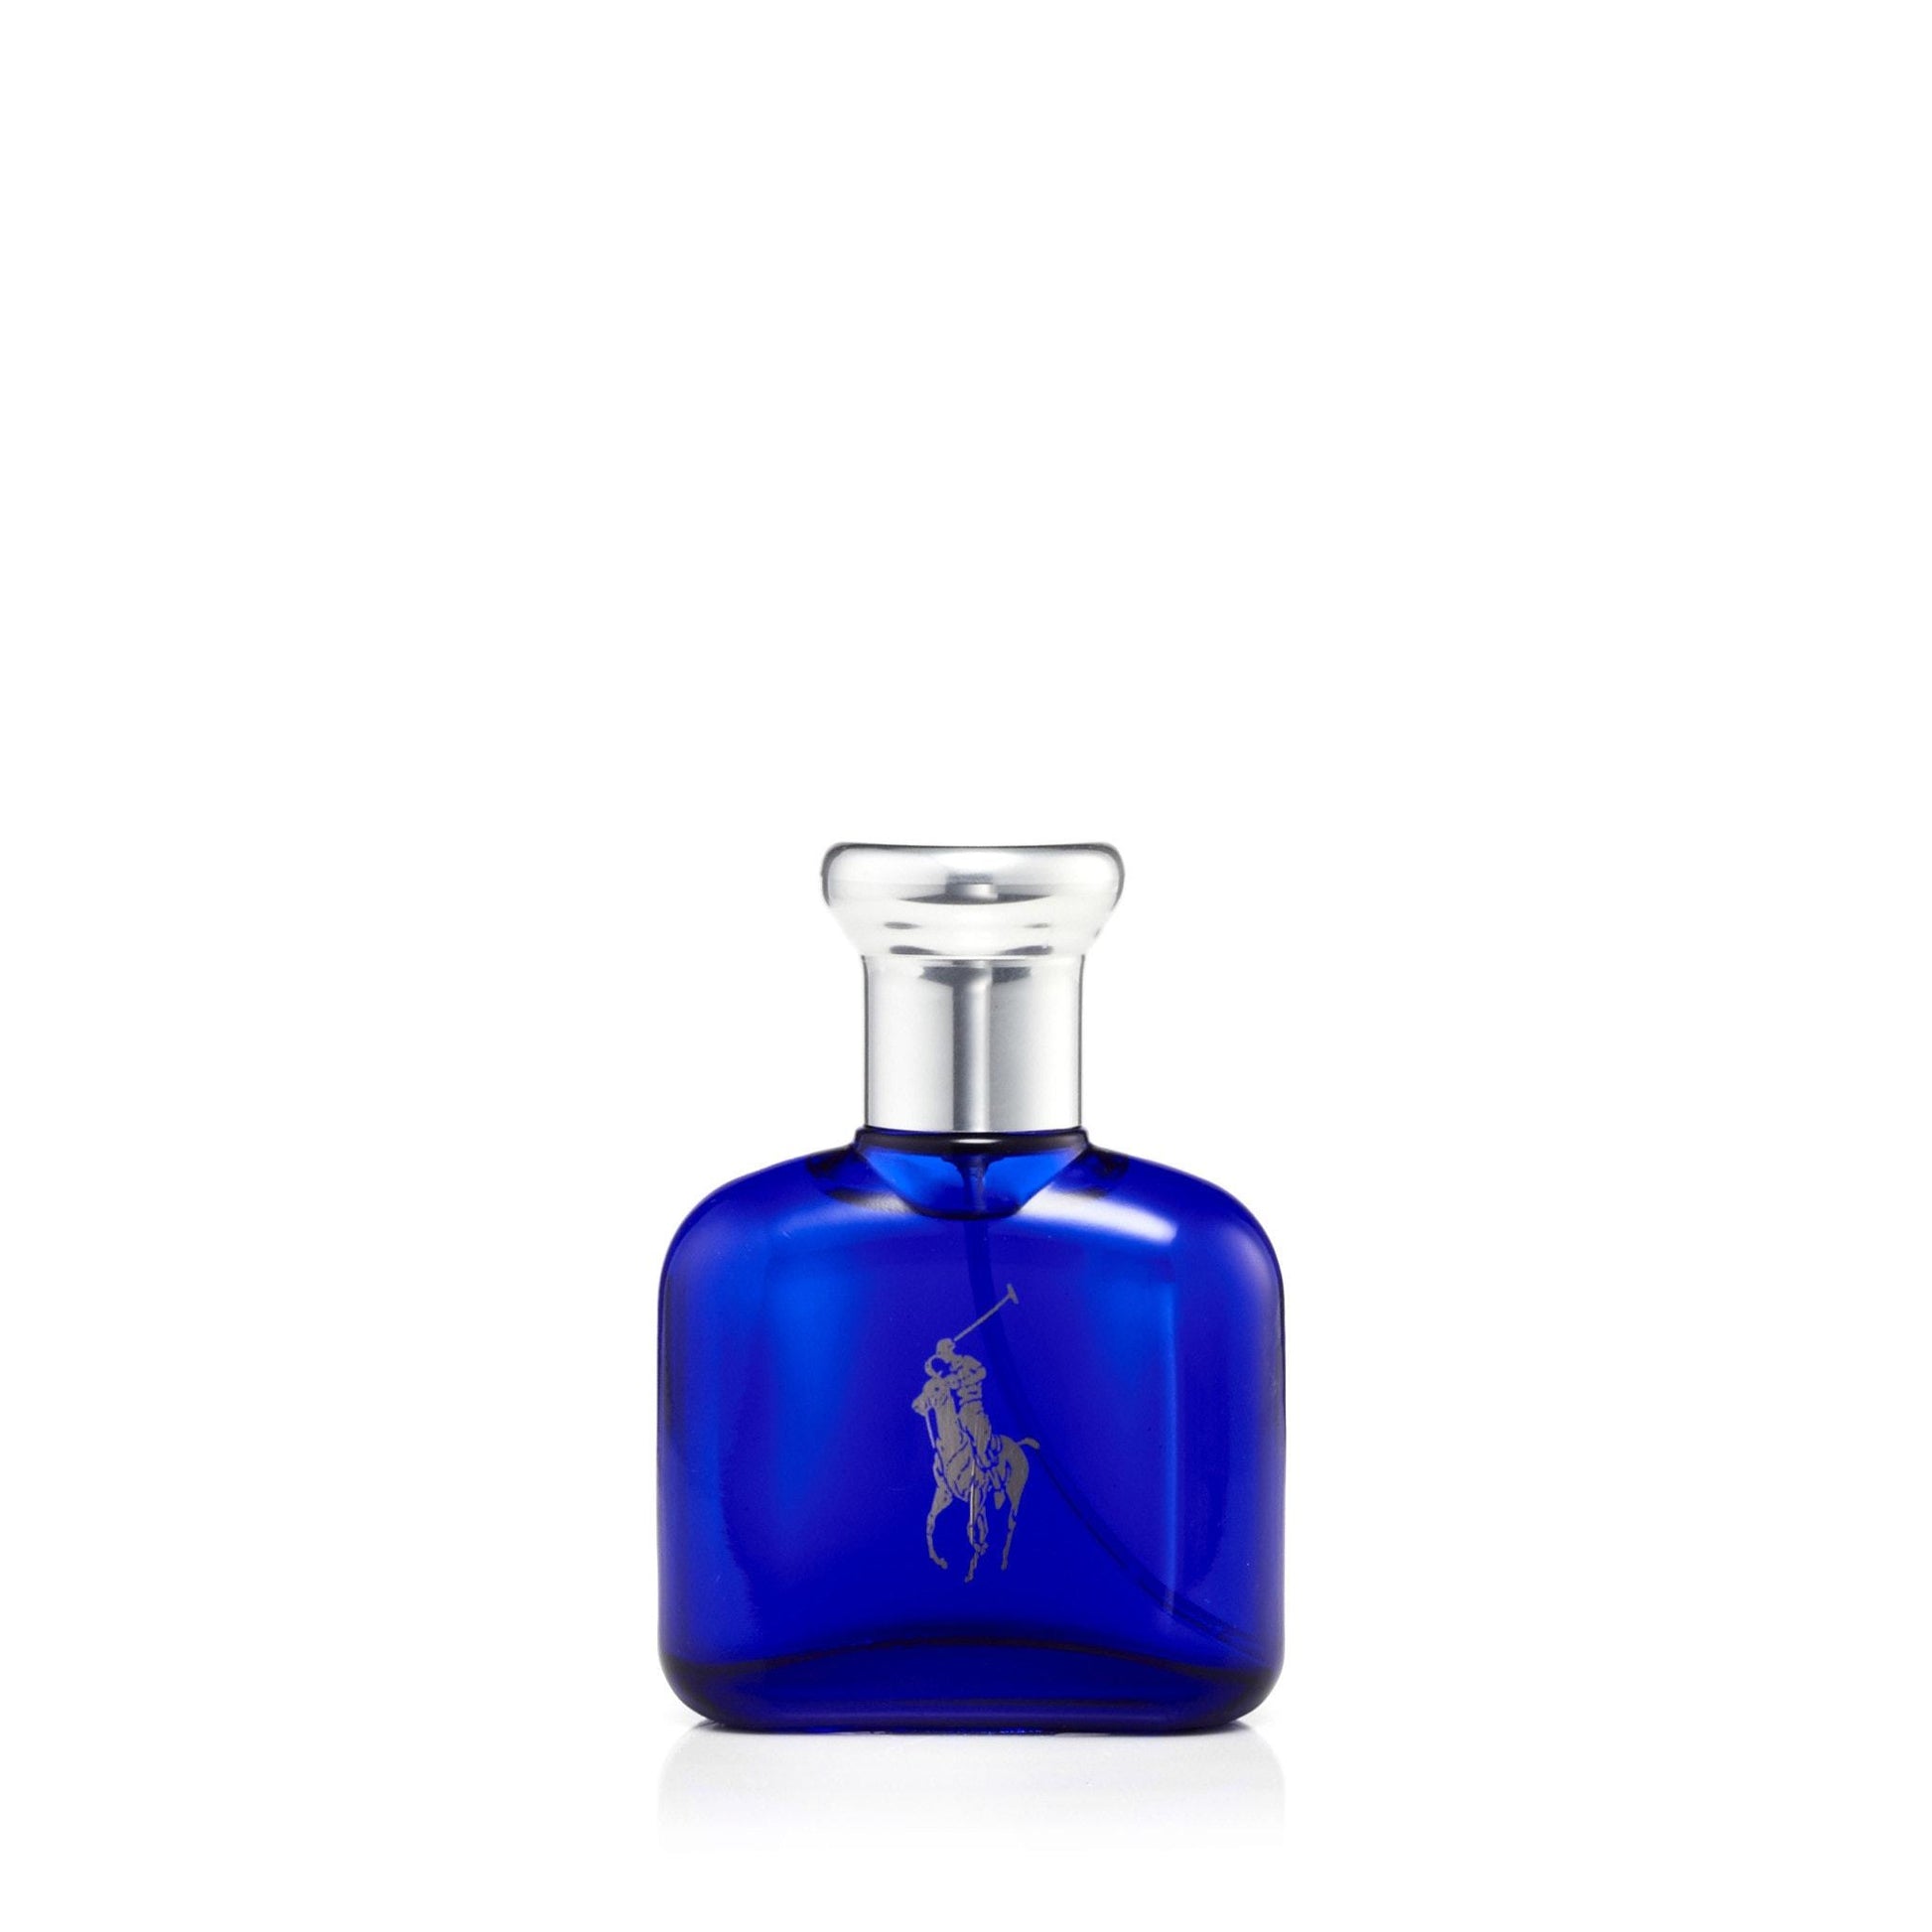 Polo Blue Eau de Toilette Spray for Men by Ralph Lauren, Product image 3